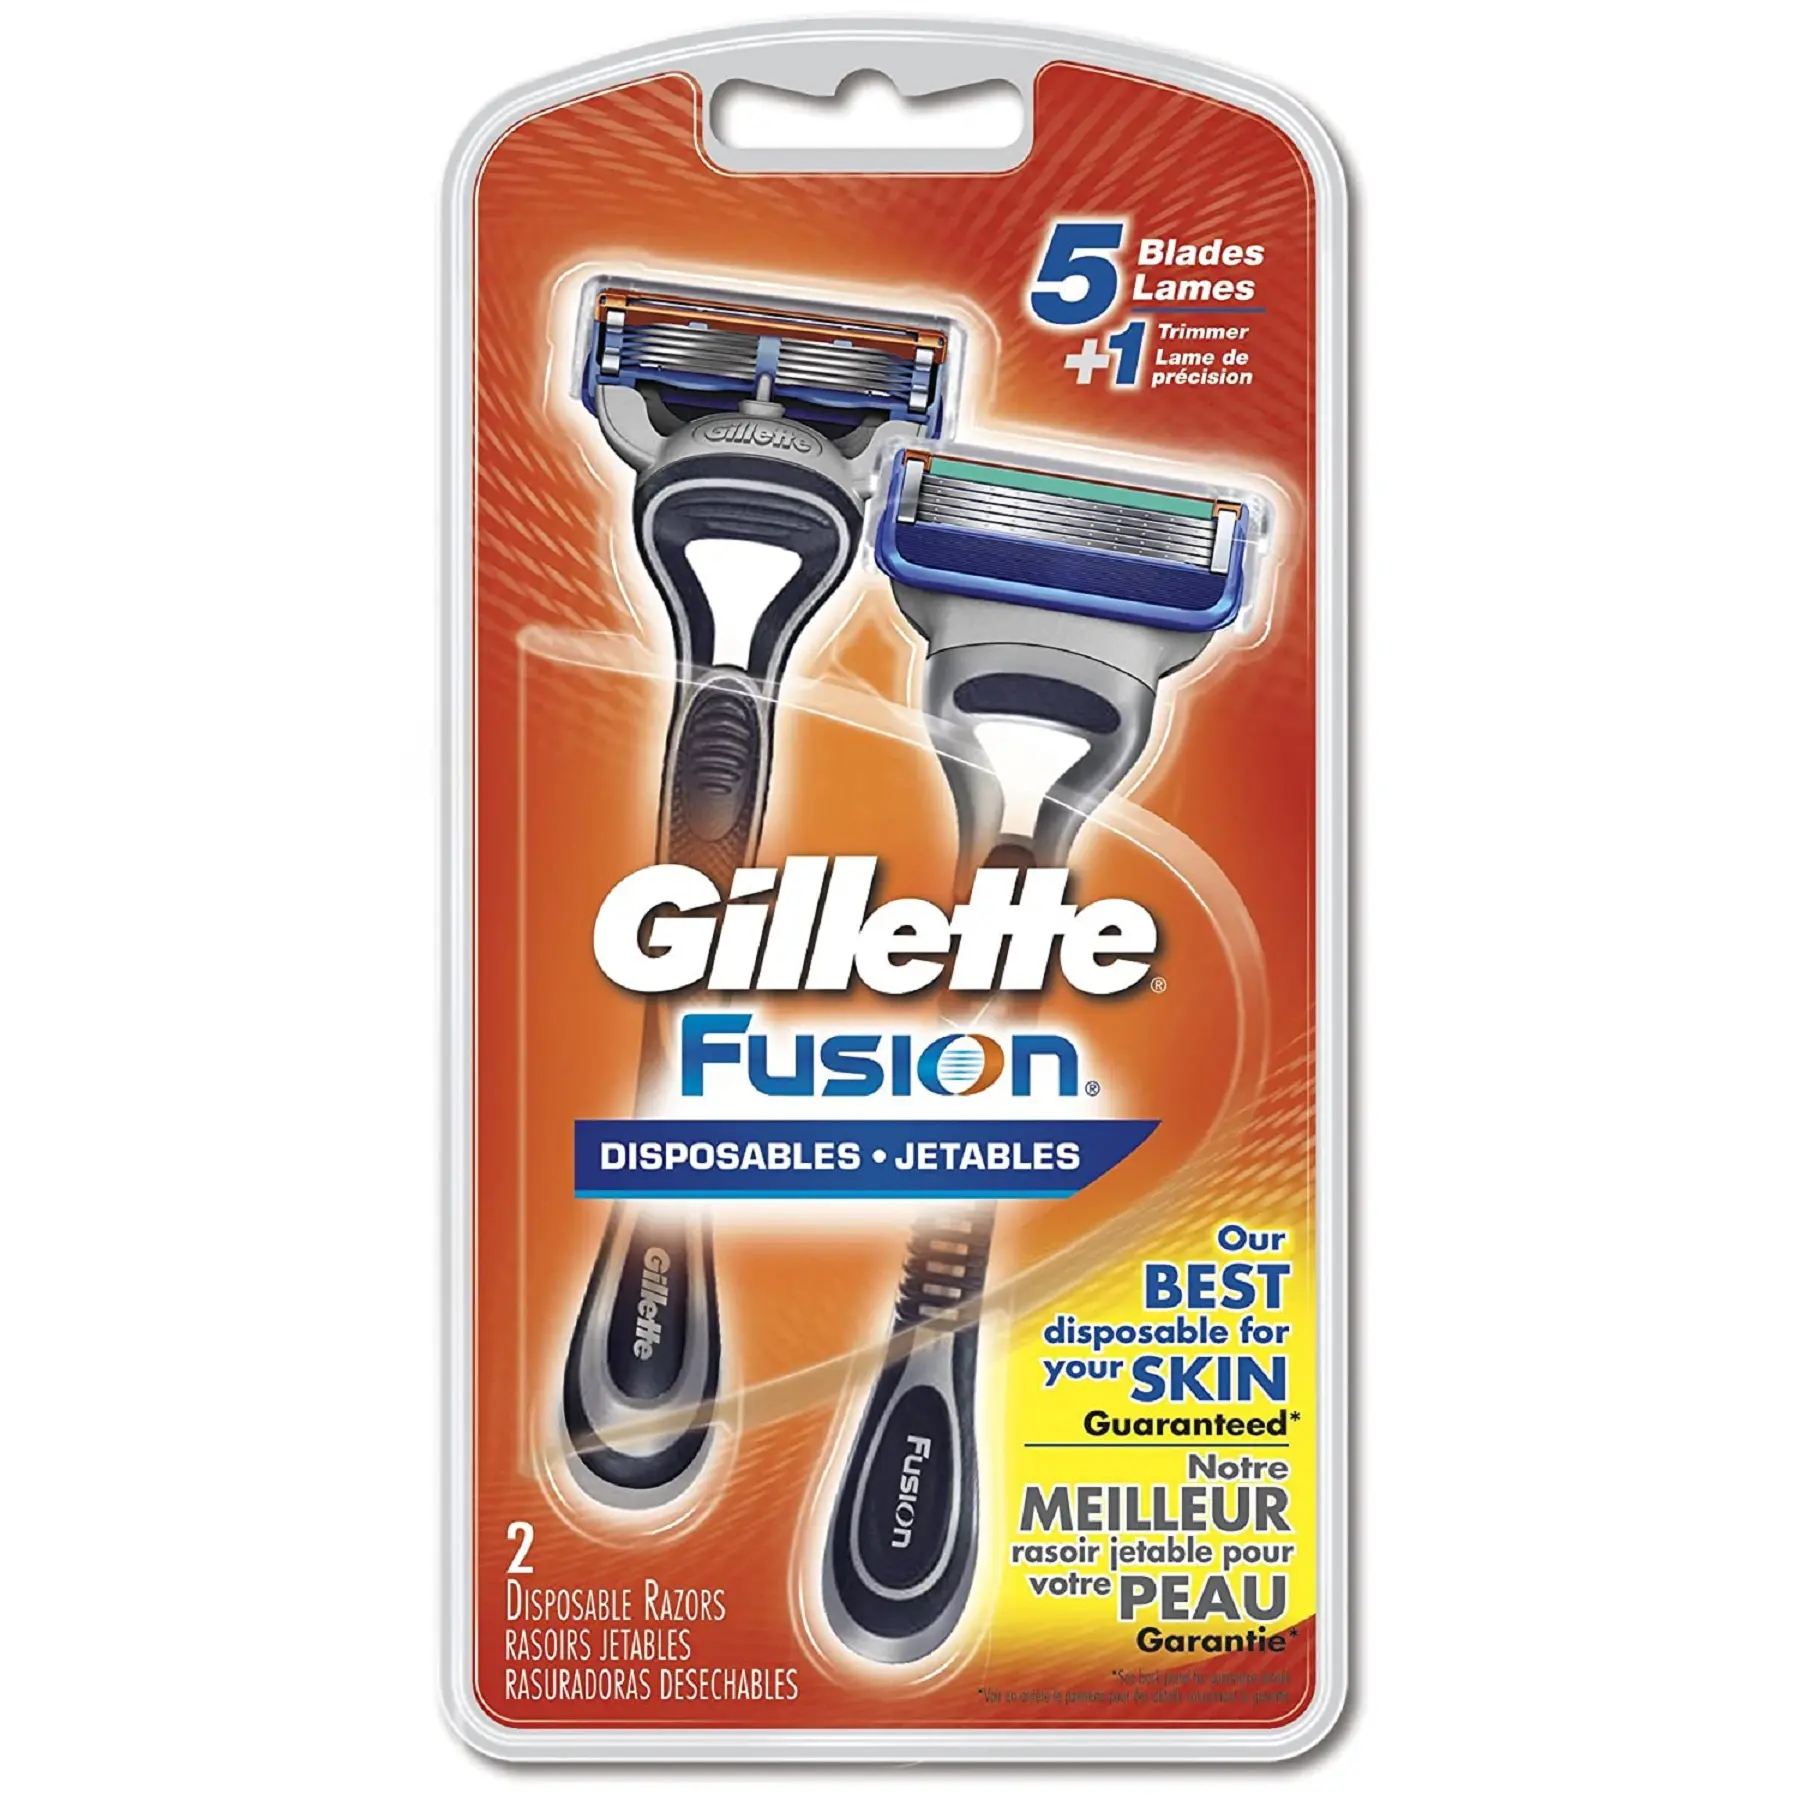 Gillette lamette monouso/GIllete per la vendita/vendita calda prezzo di originale Gillette rasoio usa e getta lame di rasoio